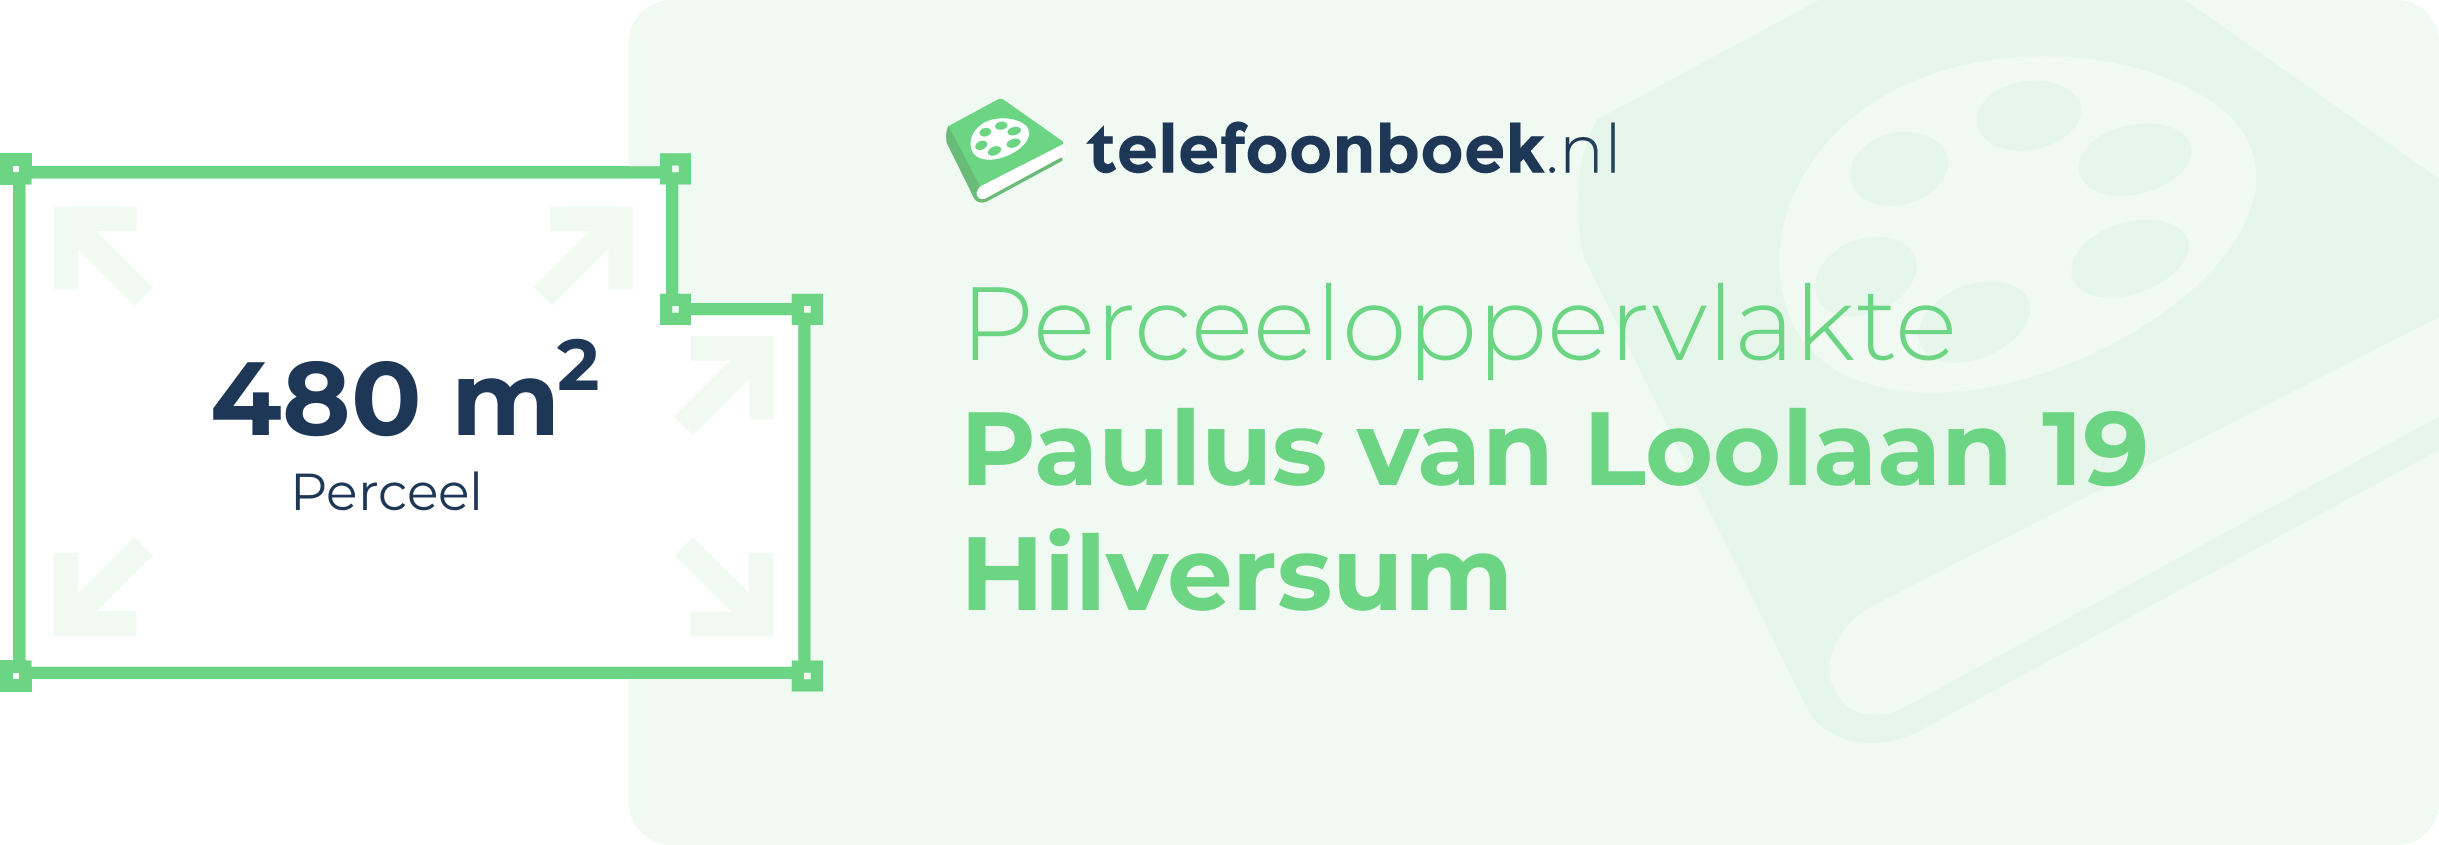 Perceeloppervlakte Paulus Van Loolaan 19 Hilversum